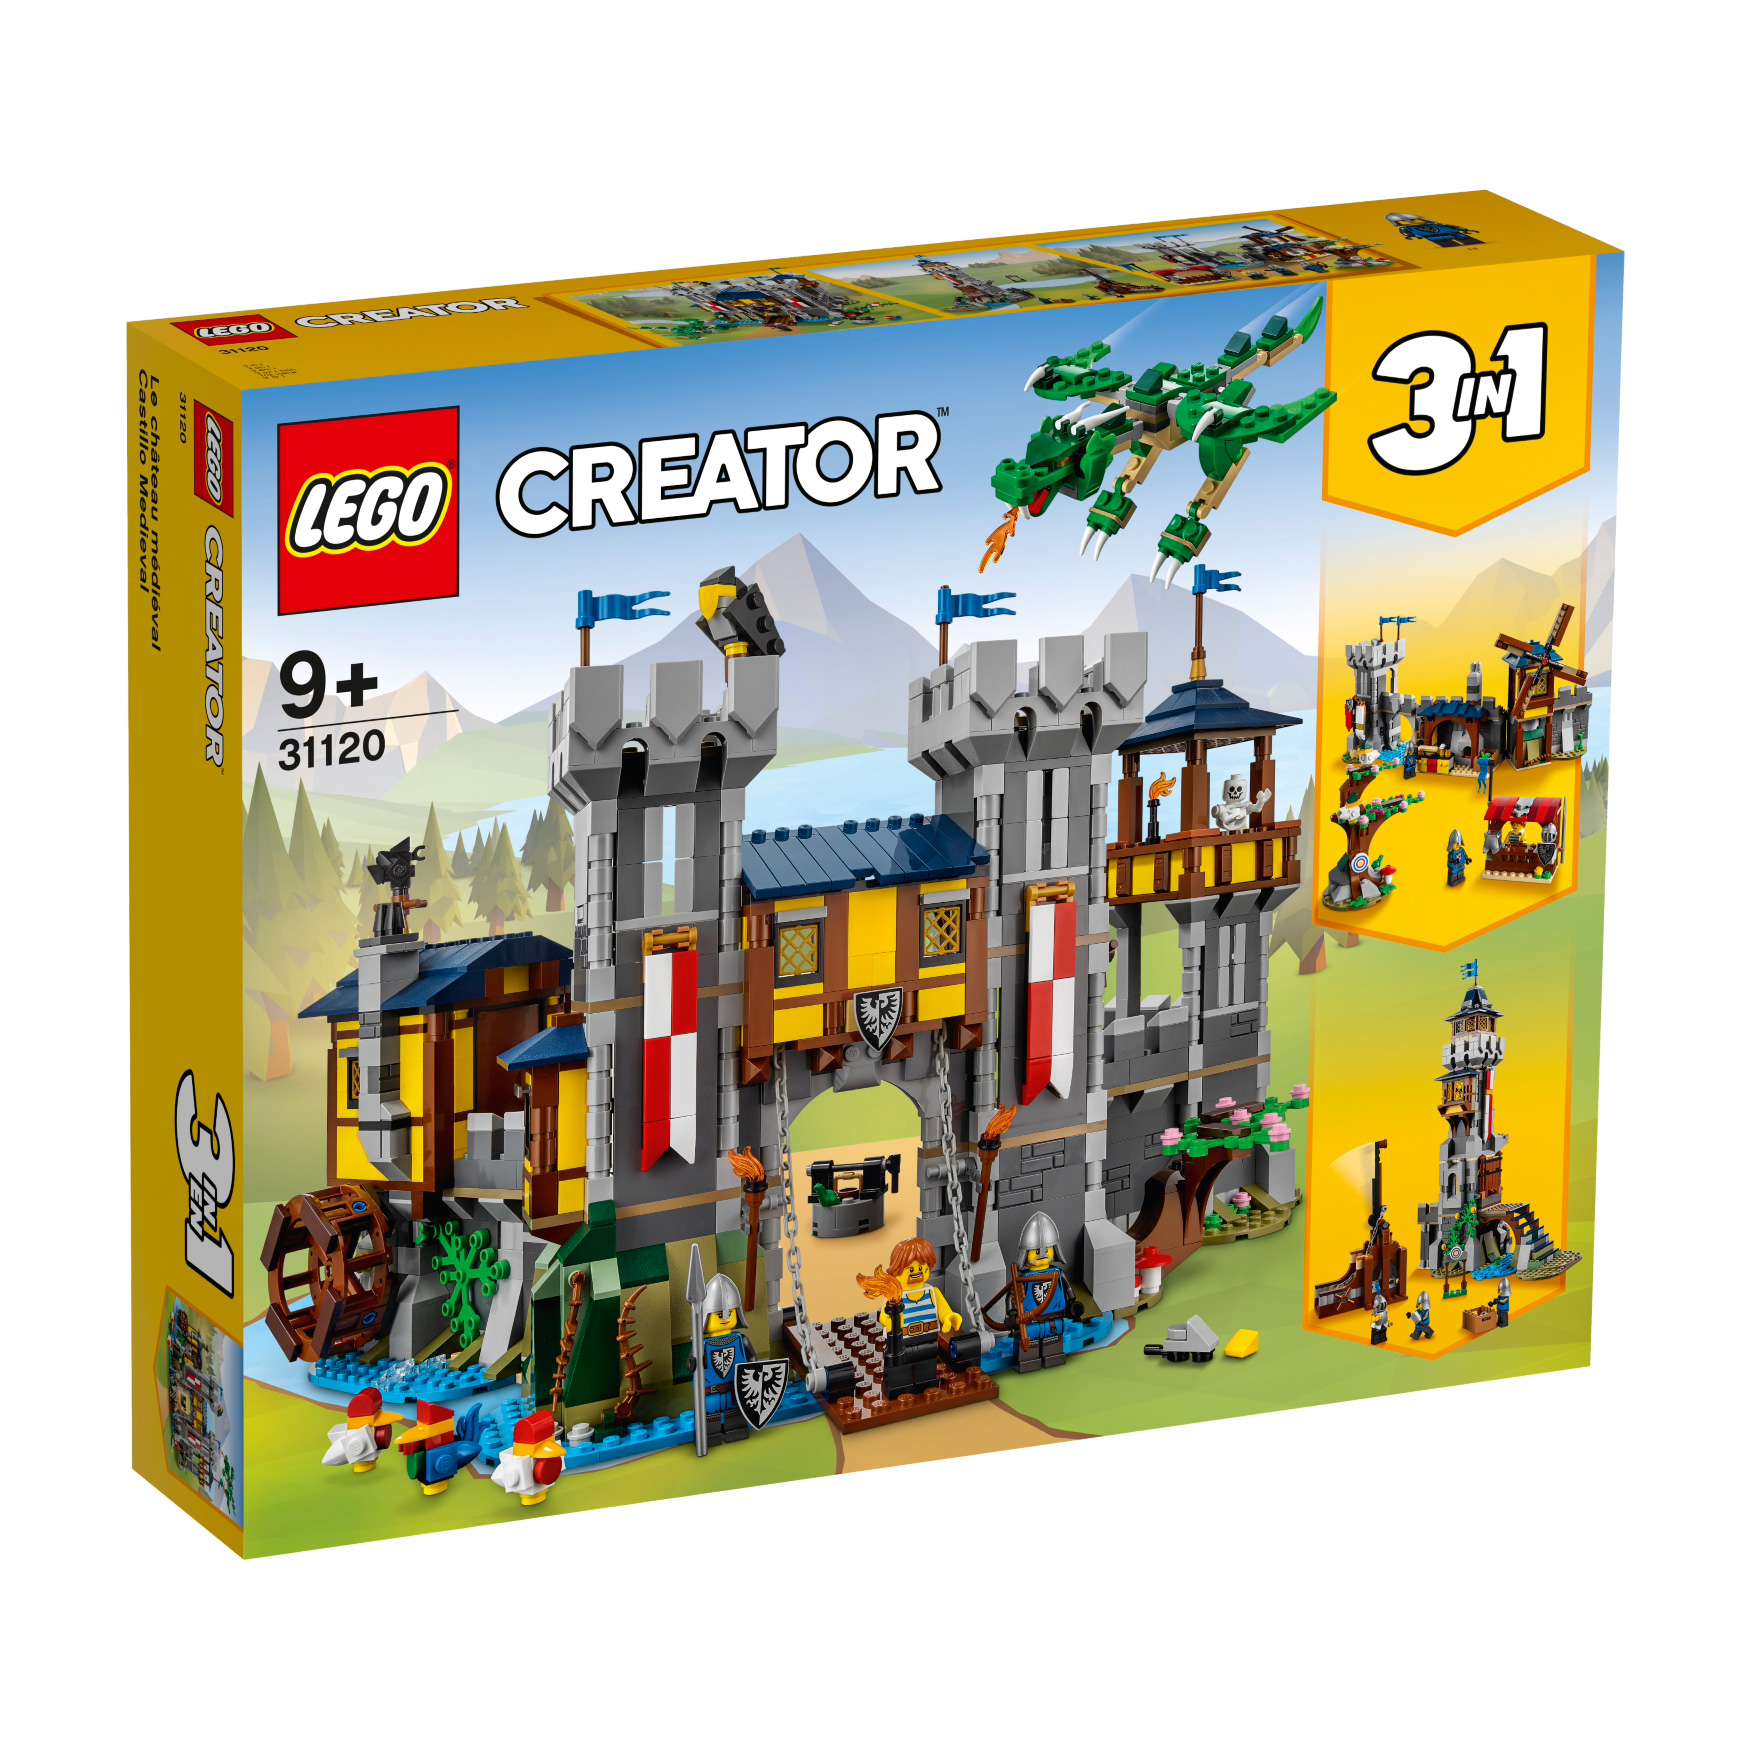 LEGO® Creator 31120 Mittelalterliche Burg günstig kaufen | brickstore.at